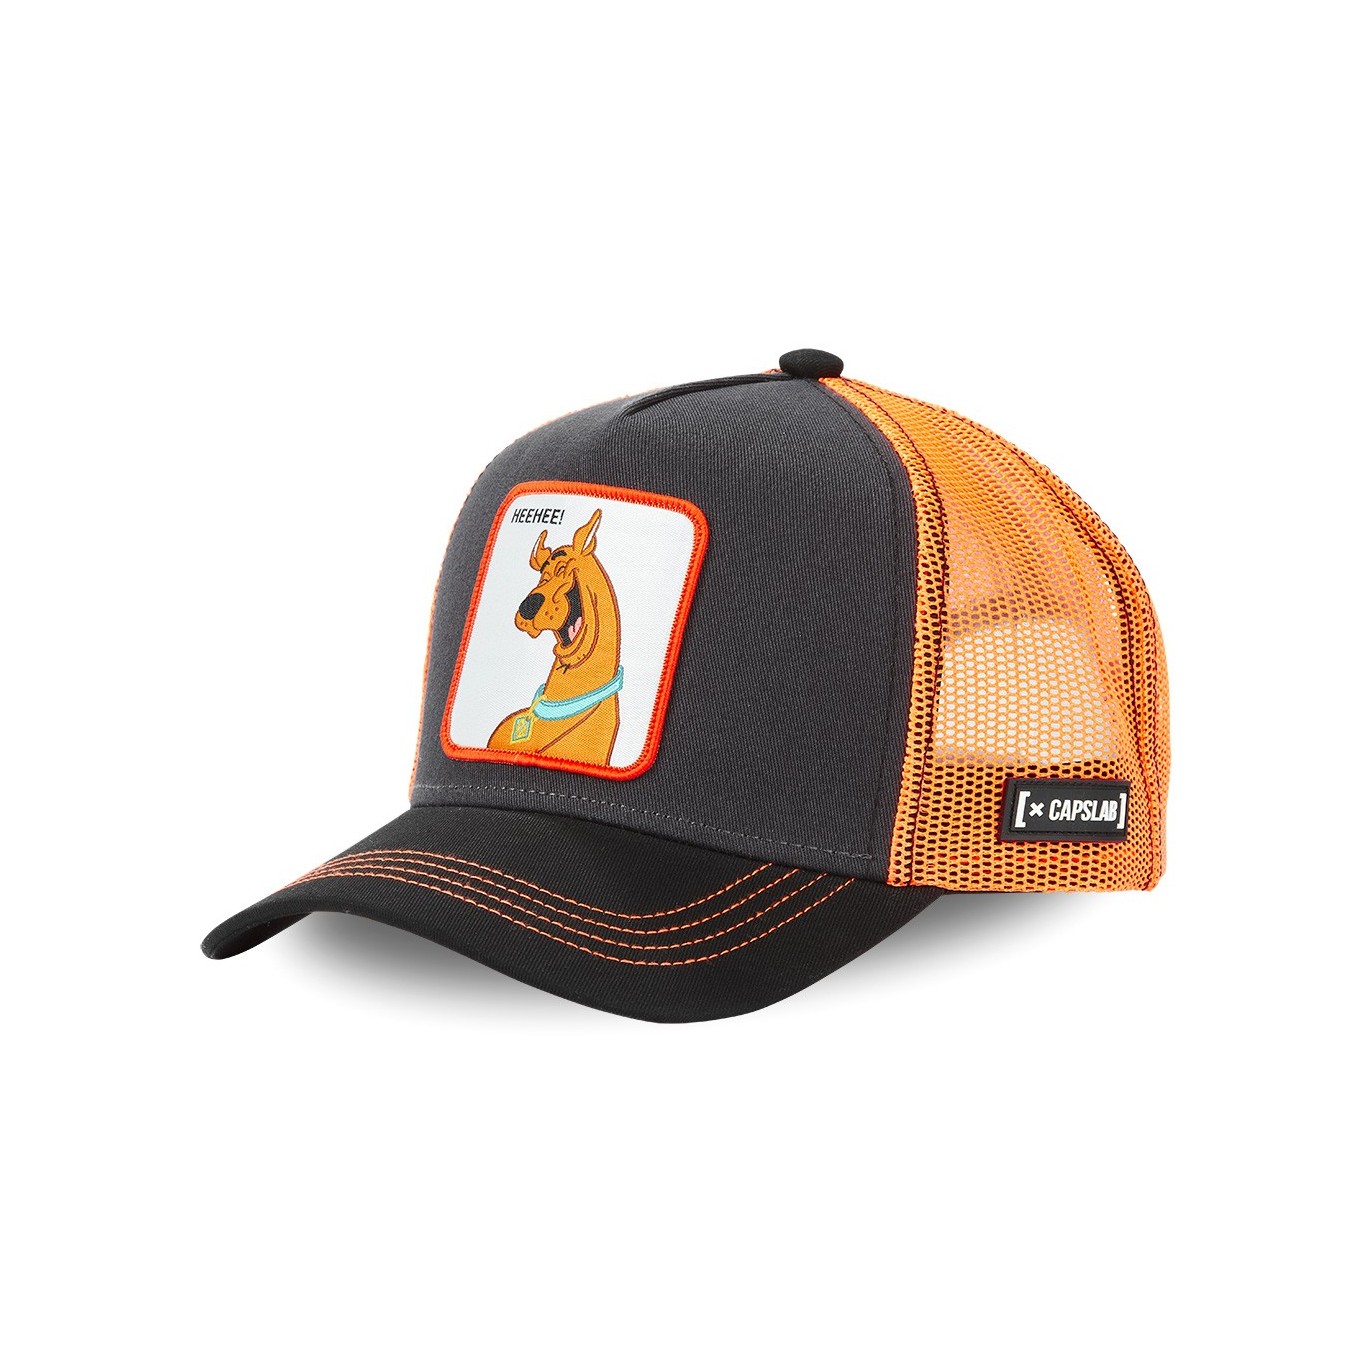 Scooby-Doo trucker cap Capslab - 1